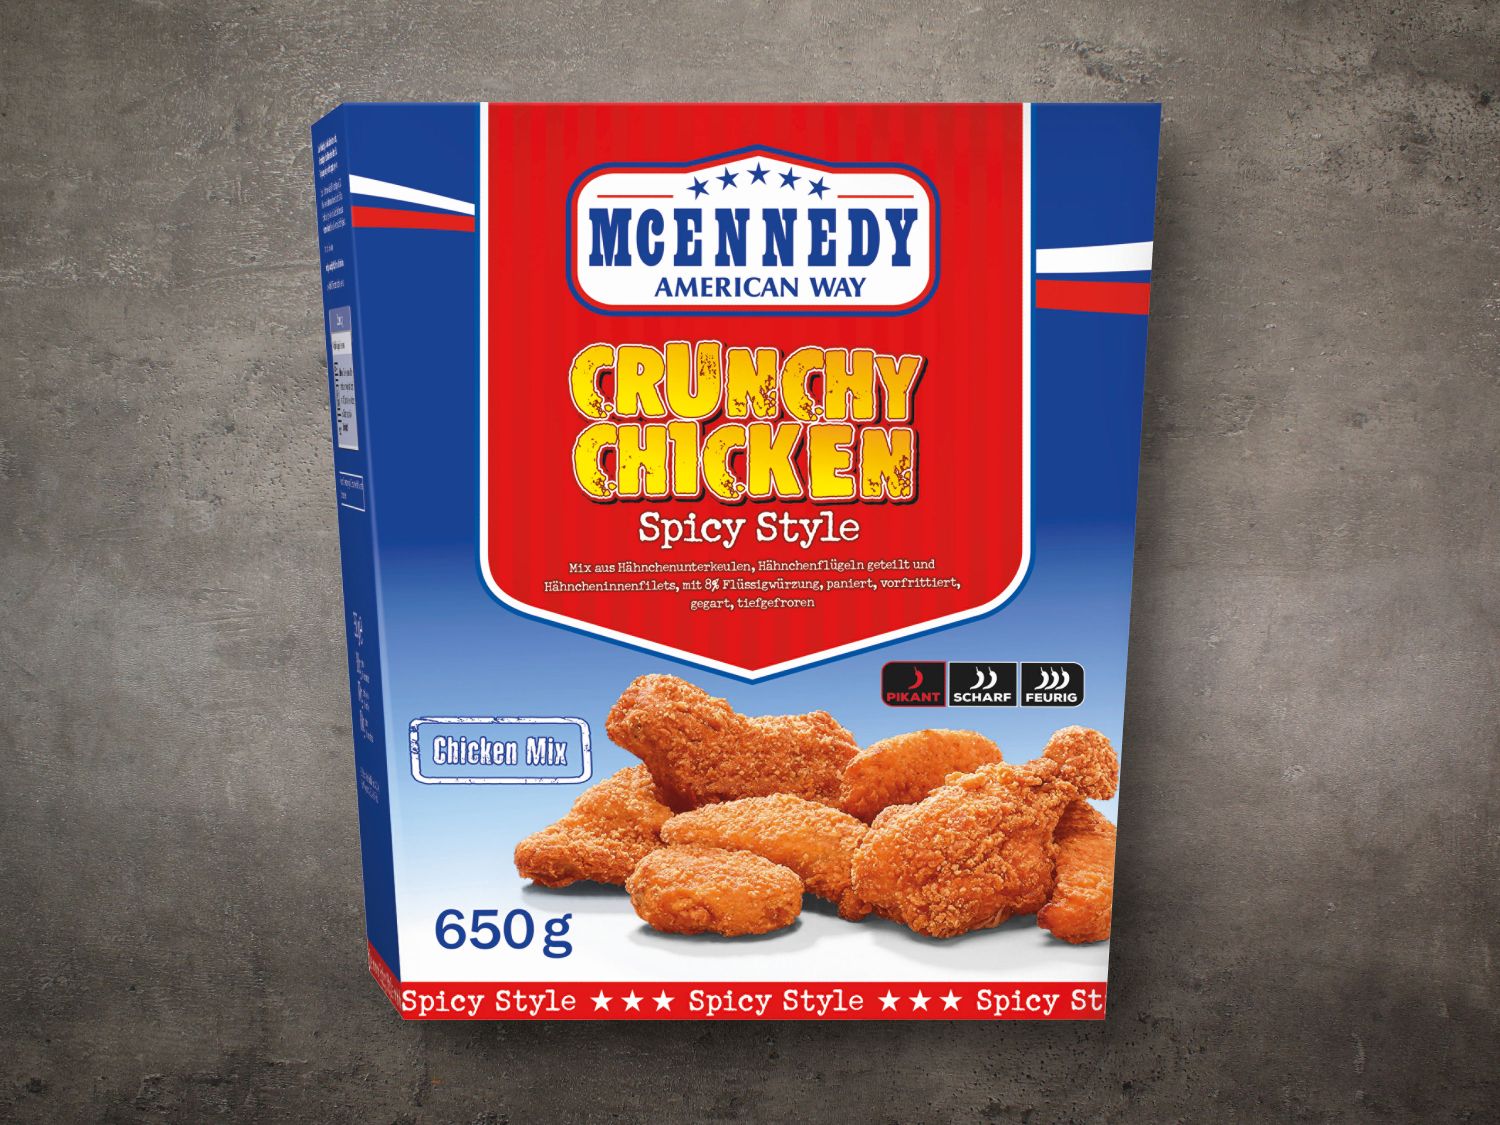 McEnnedy Crunchy Chicken Bucket - Lidl Deutschland